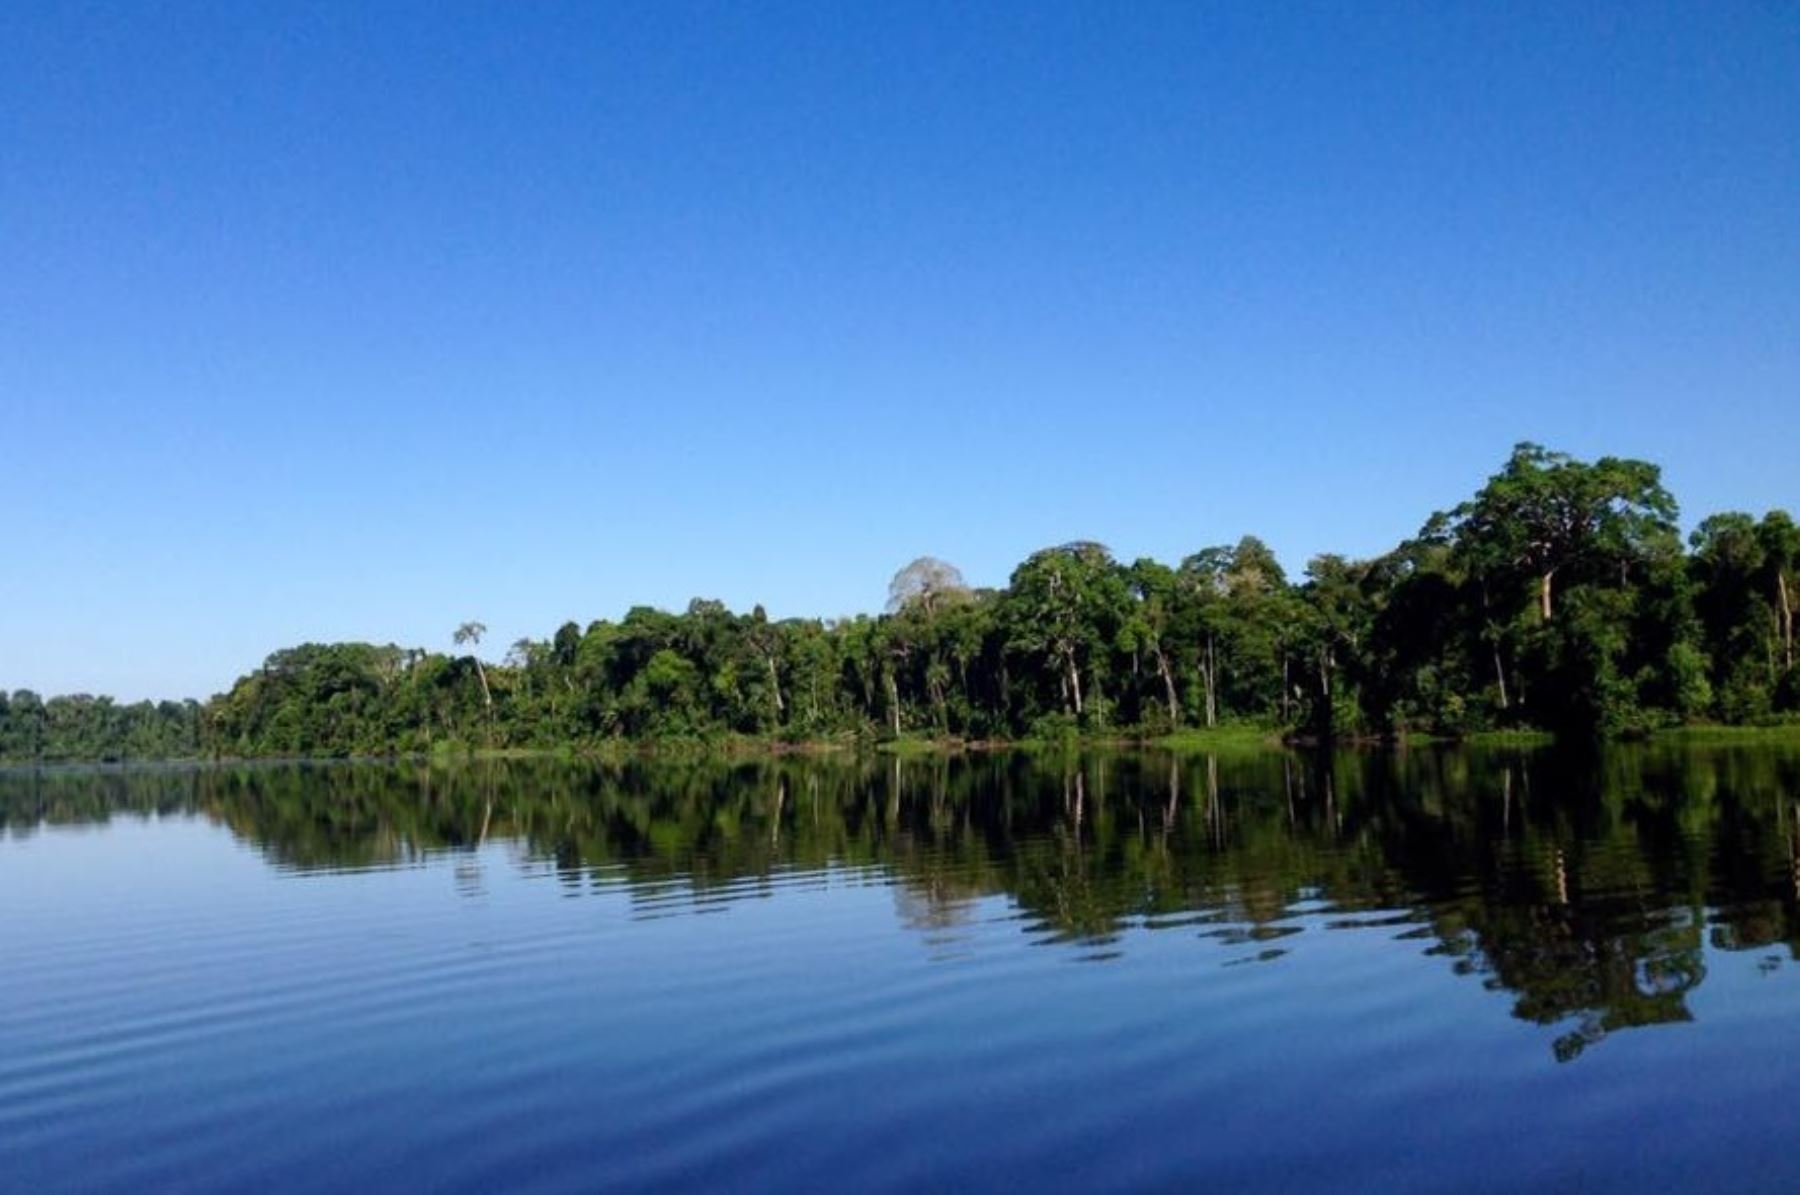 El Estado peruano mantiene su compromiso con el desarrollo sostenible, con el respeto de los derechos de los pueblos indígenas y con la conservación de los bosques amazónicos, sostuvo hoy el Ministerio del Ambiente. ANDINA/Difusión